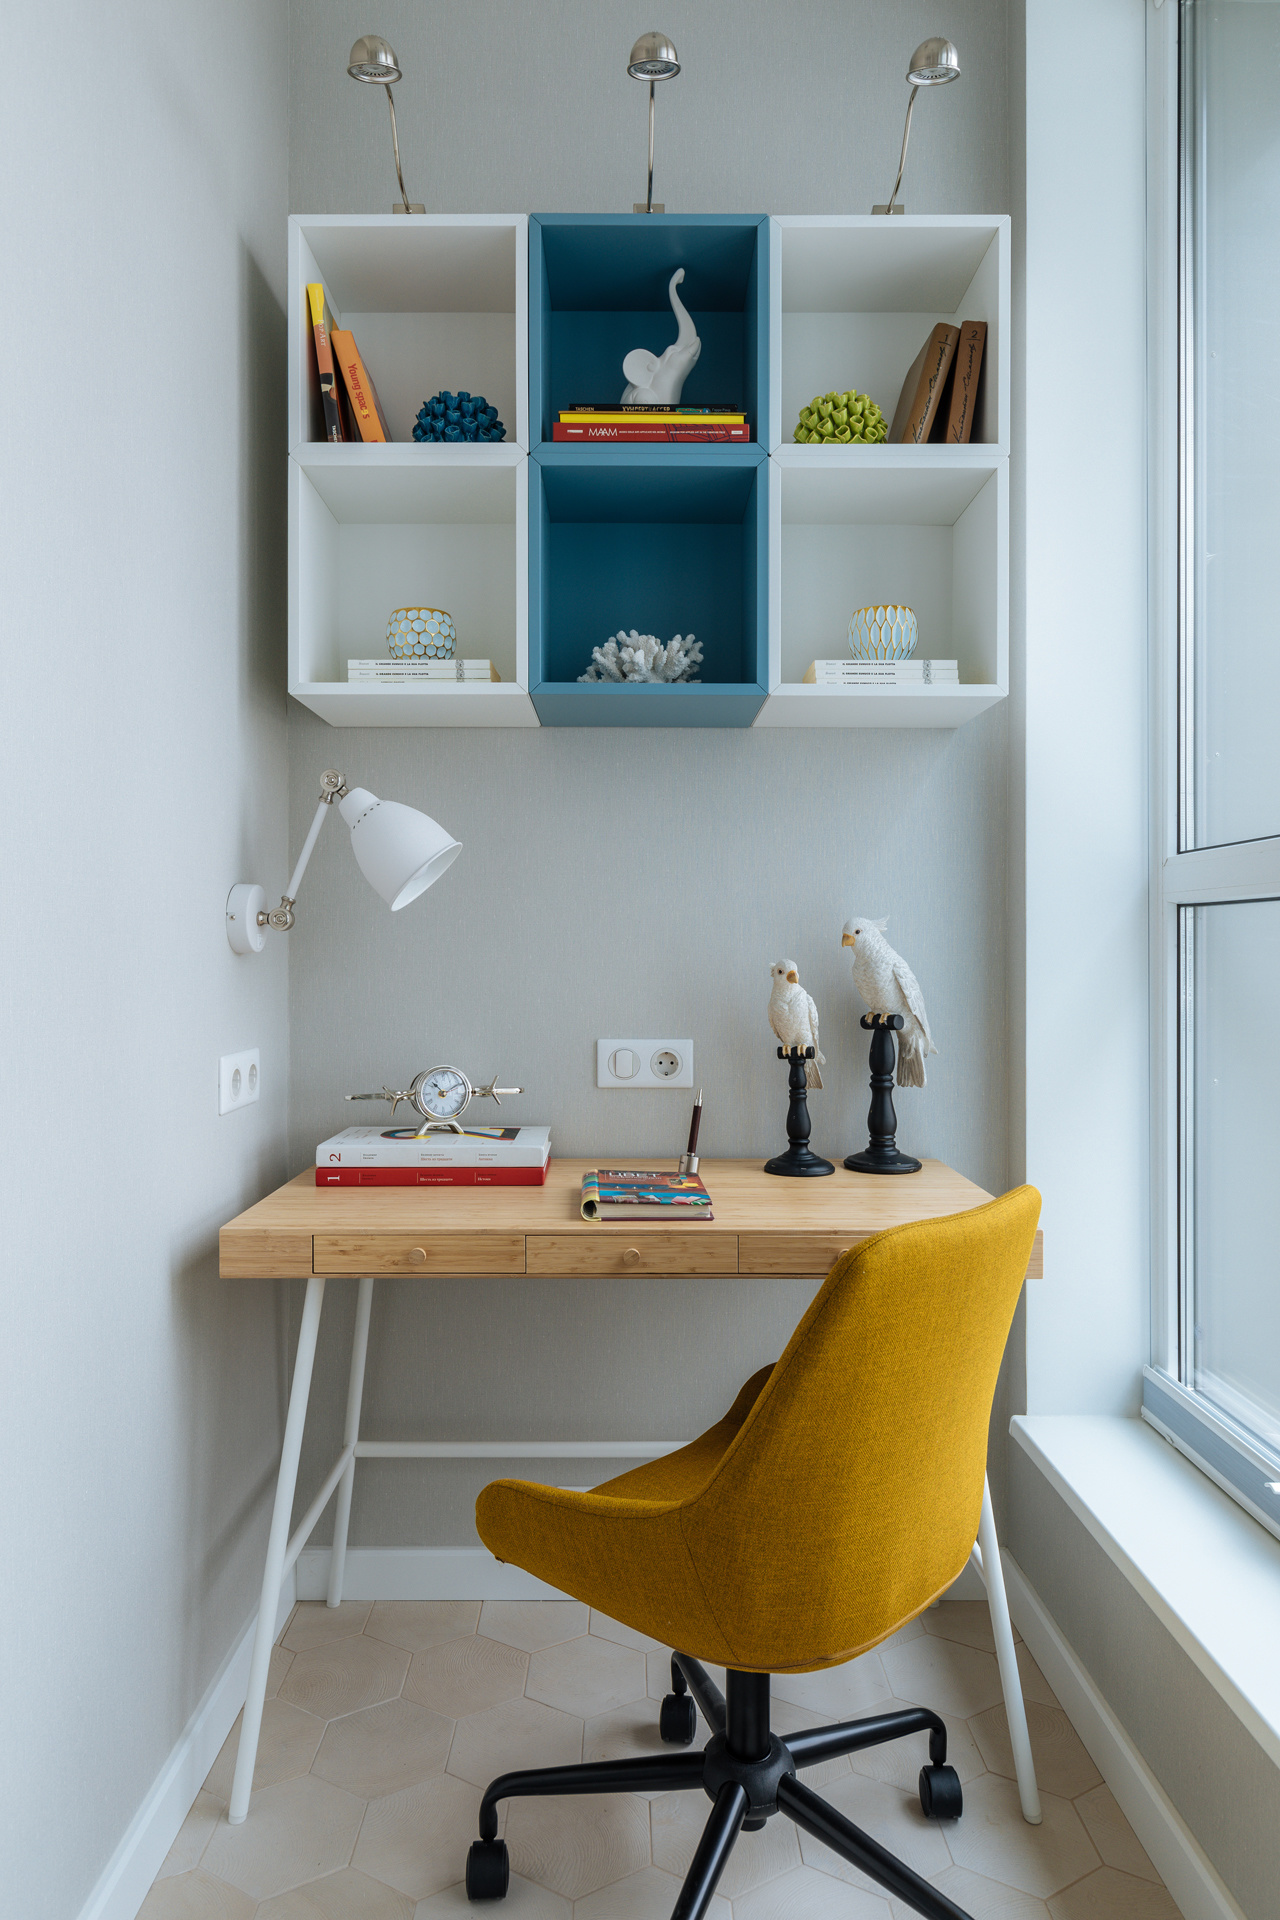 Góc làm việc tại gia đơn giản nhưng tiện nghi, được bố trí tại góc logia của căn hộ nhỏ. Chiếc bàn gỗ mộc mạc, ghế xoay màu vàng mù tạt, kết hợp với bộ kệ treo tường trắng - xanh lam từ thương hiệu IKEA tạo nên khu vực làm việc tiện nghi, đẹp mắt.